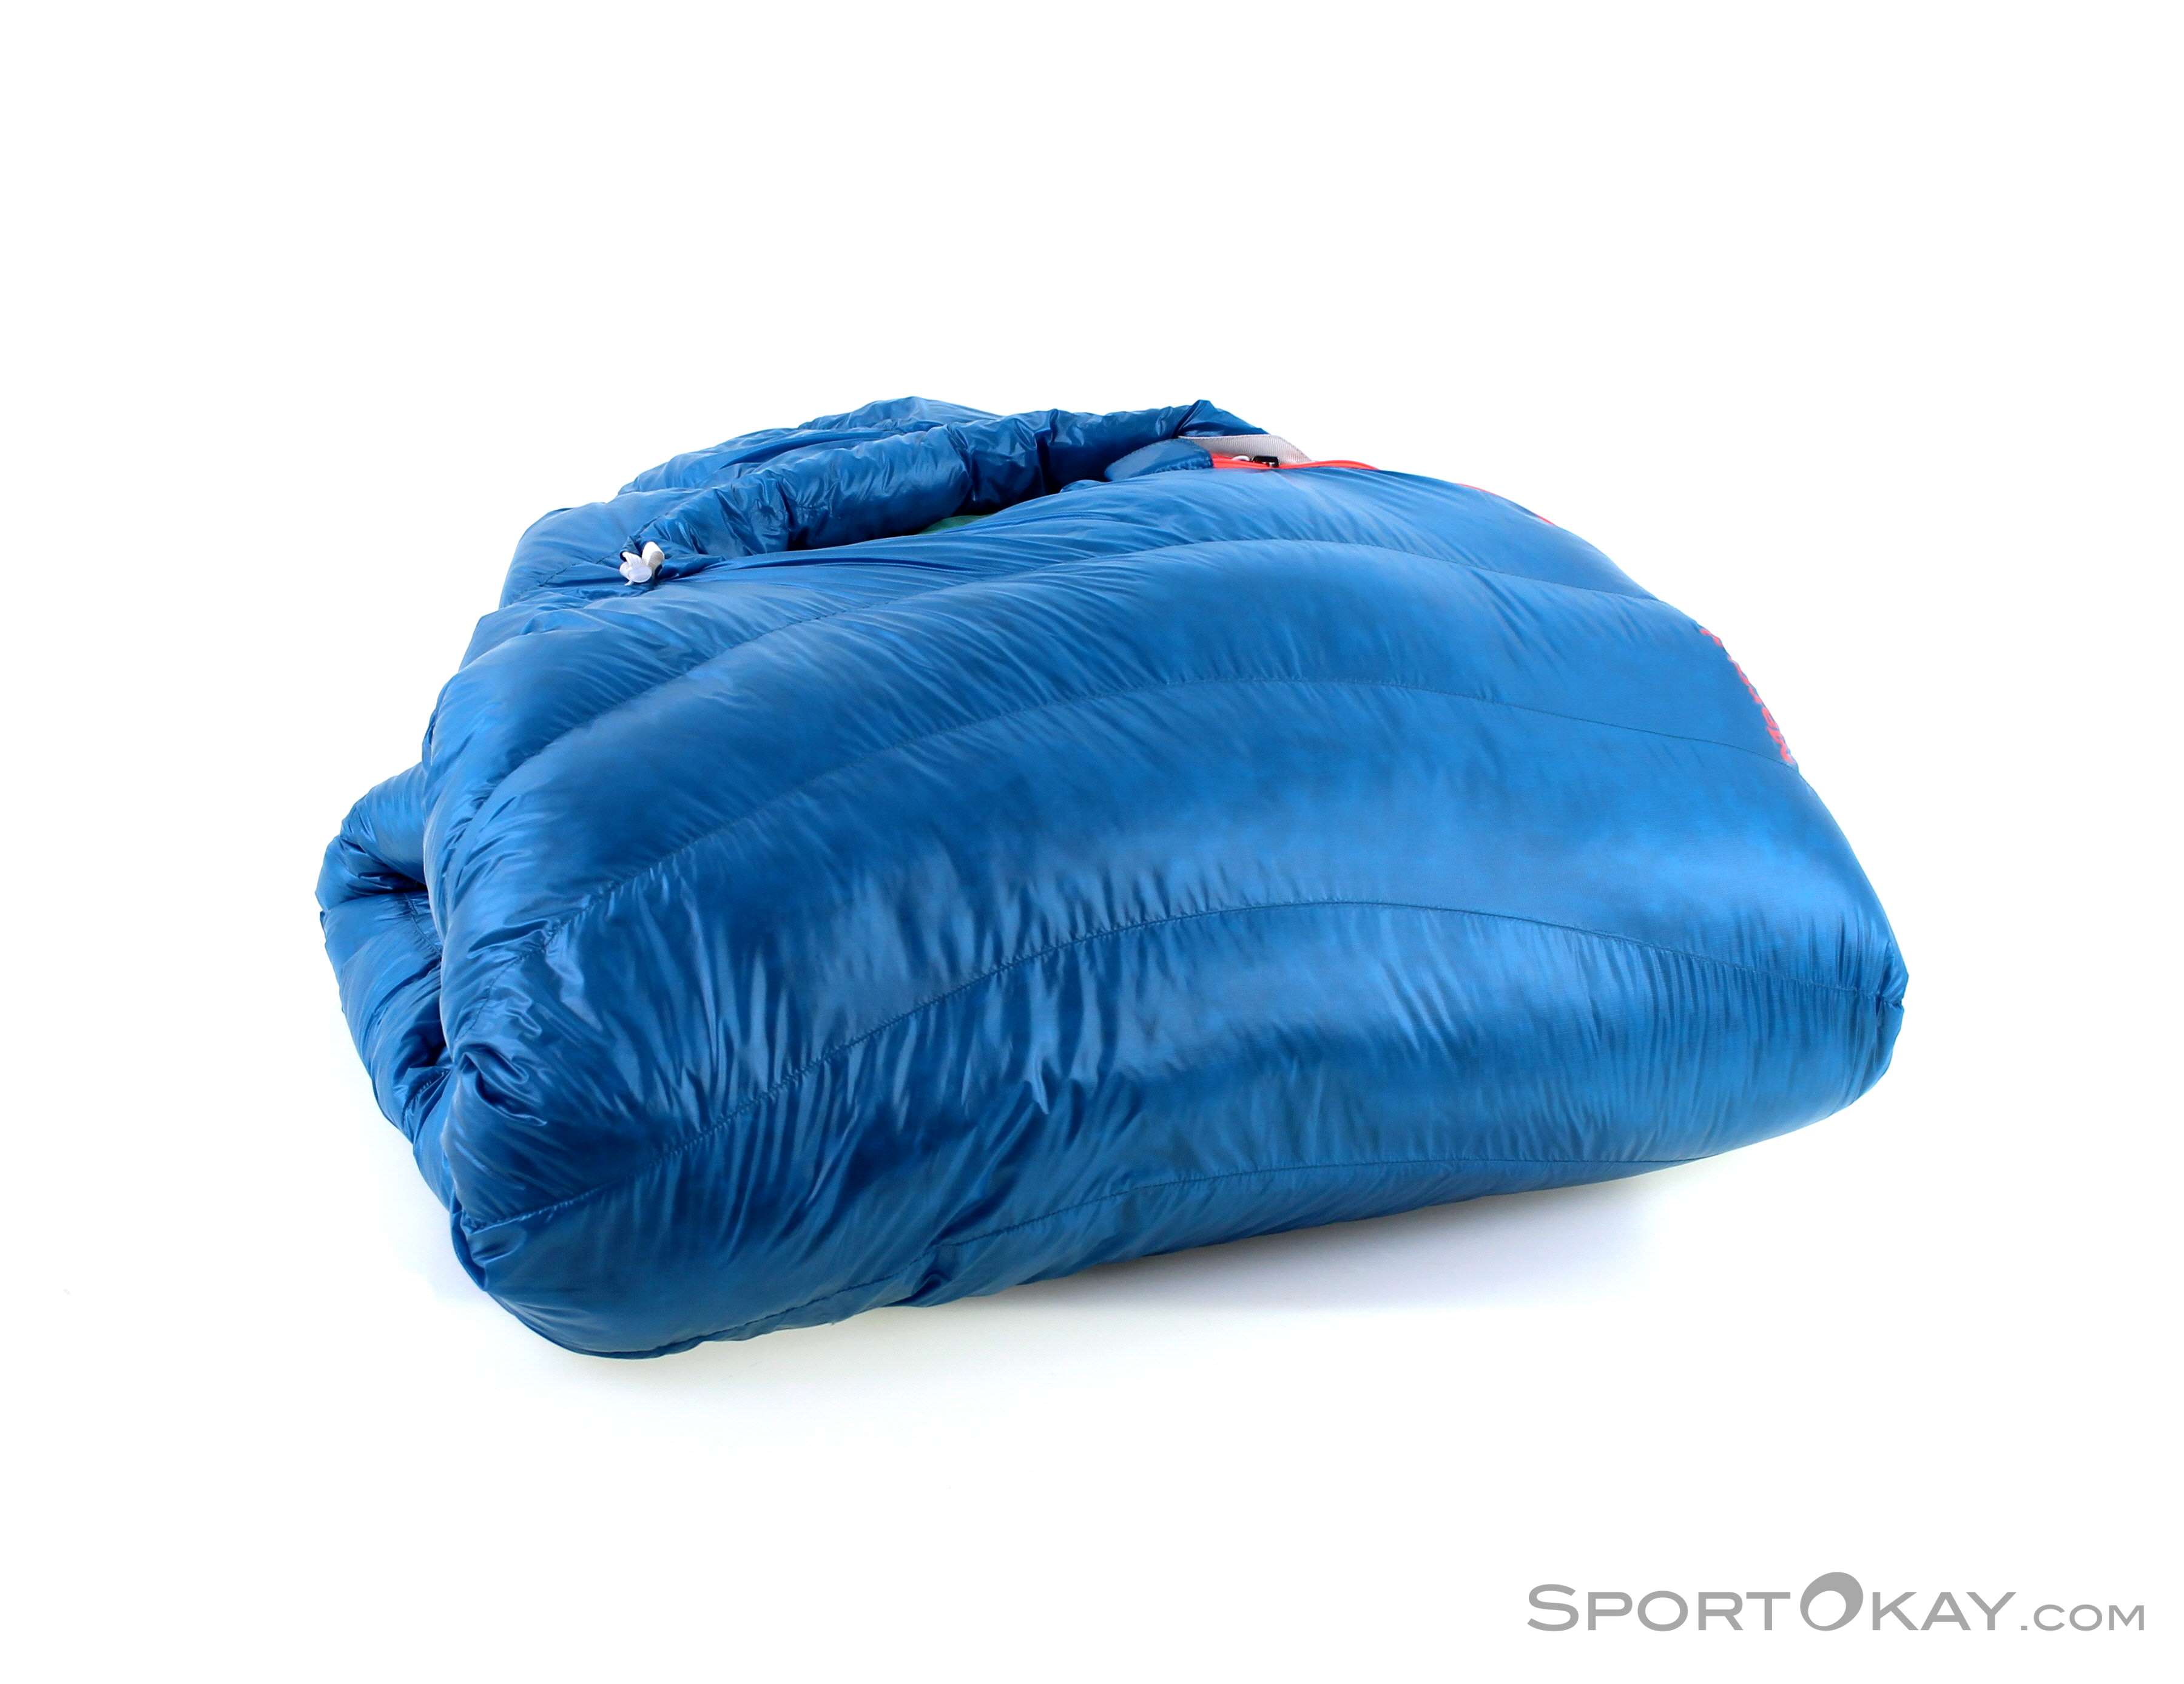 Marmot Sleeping Bag Size Chart